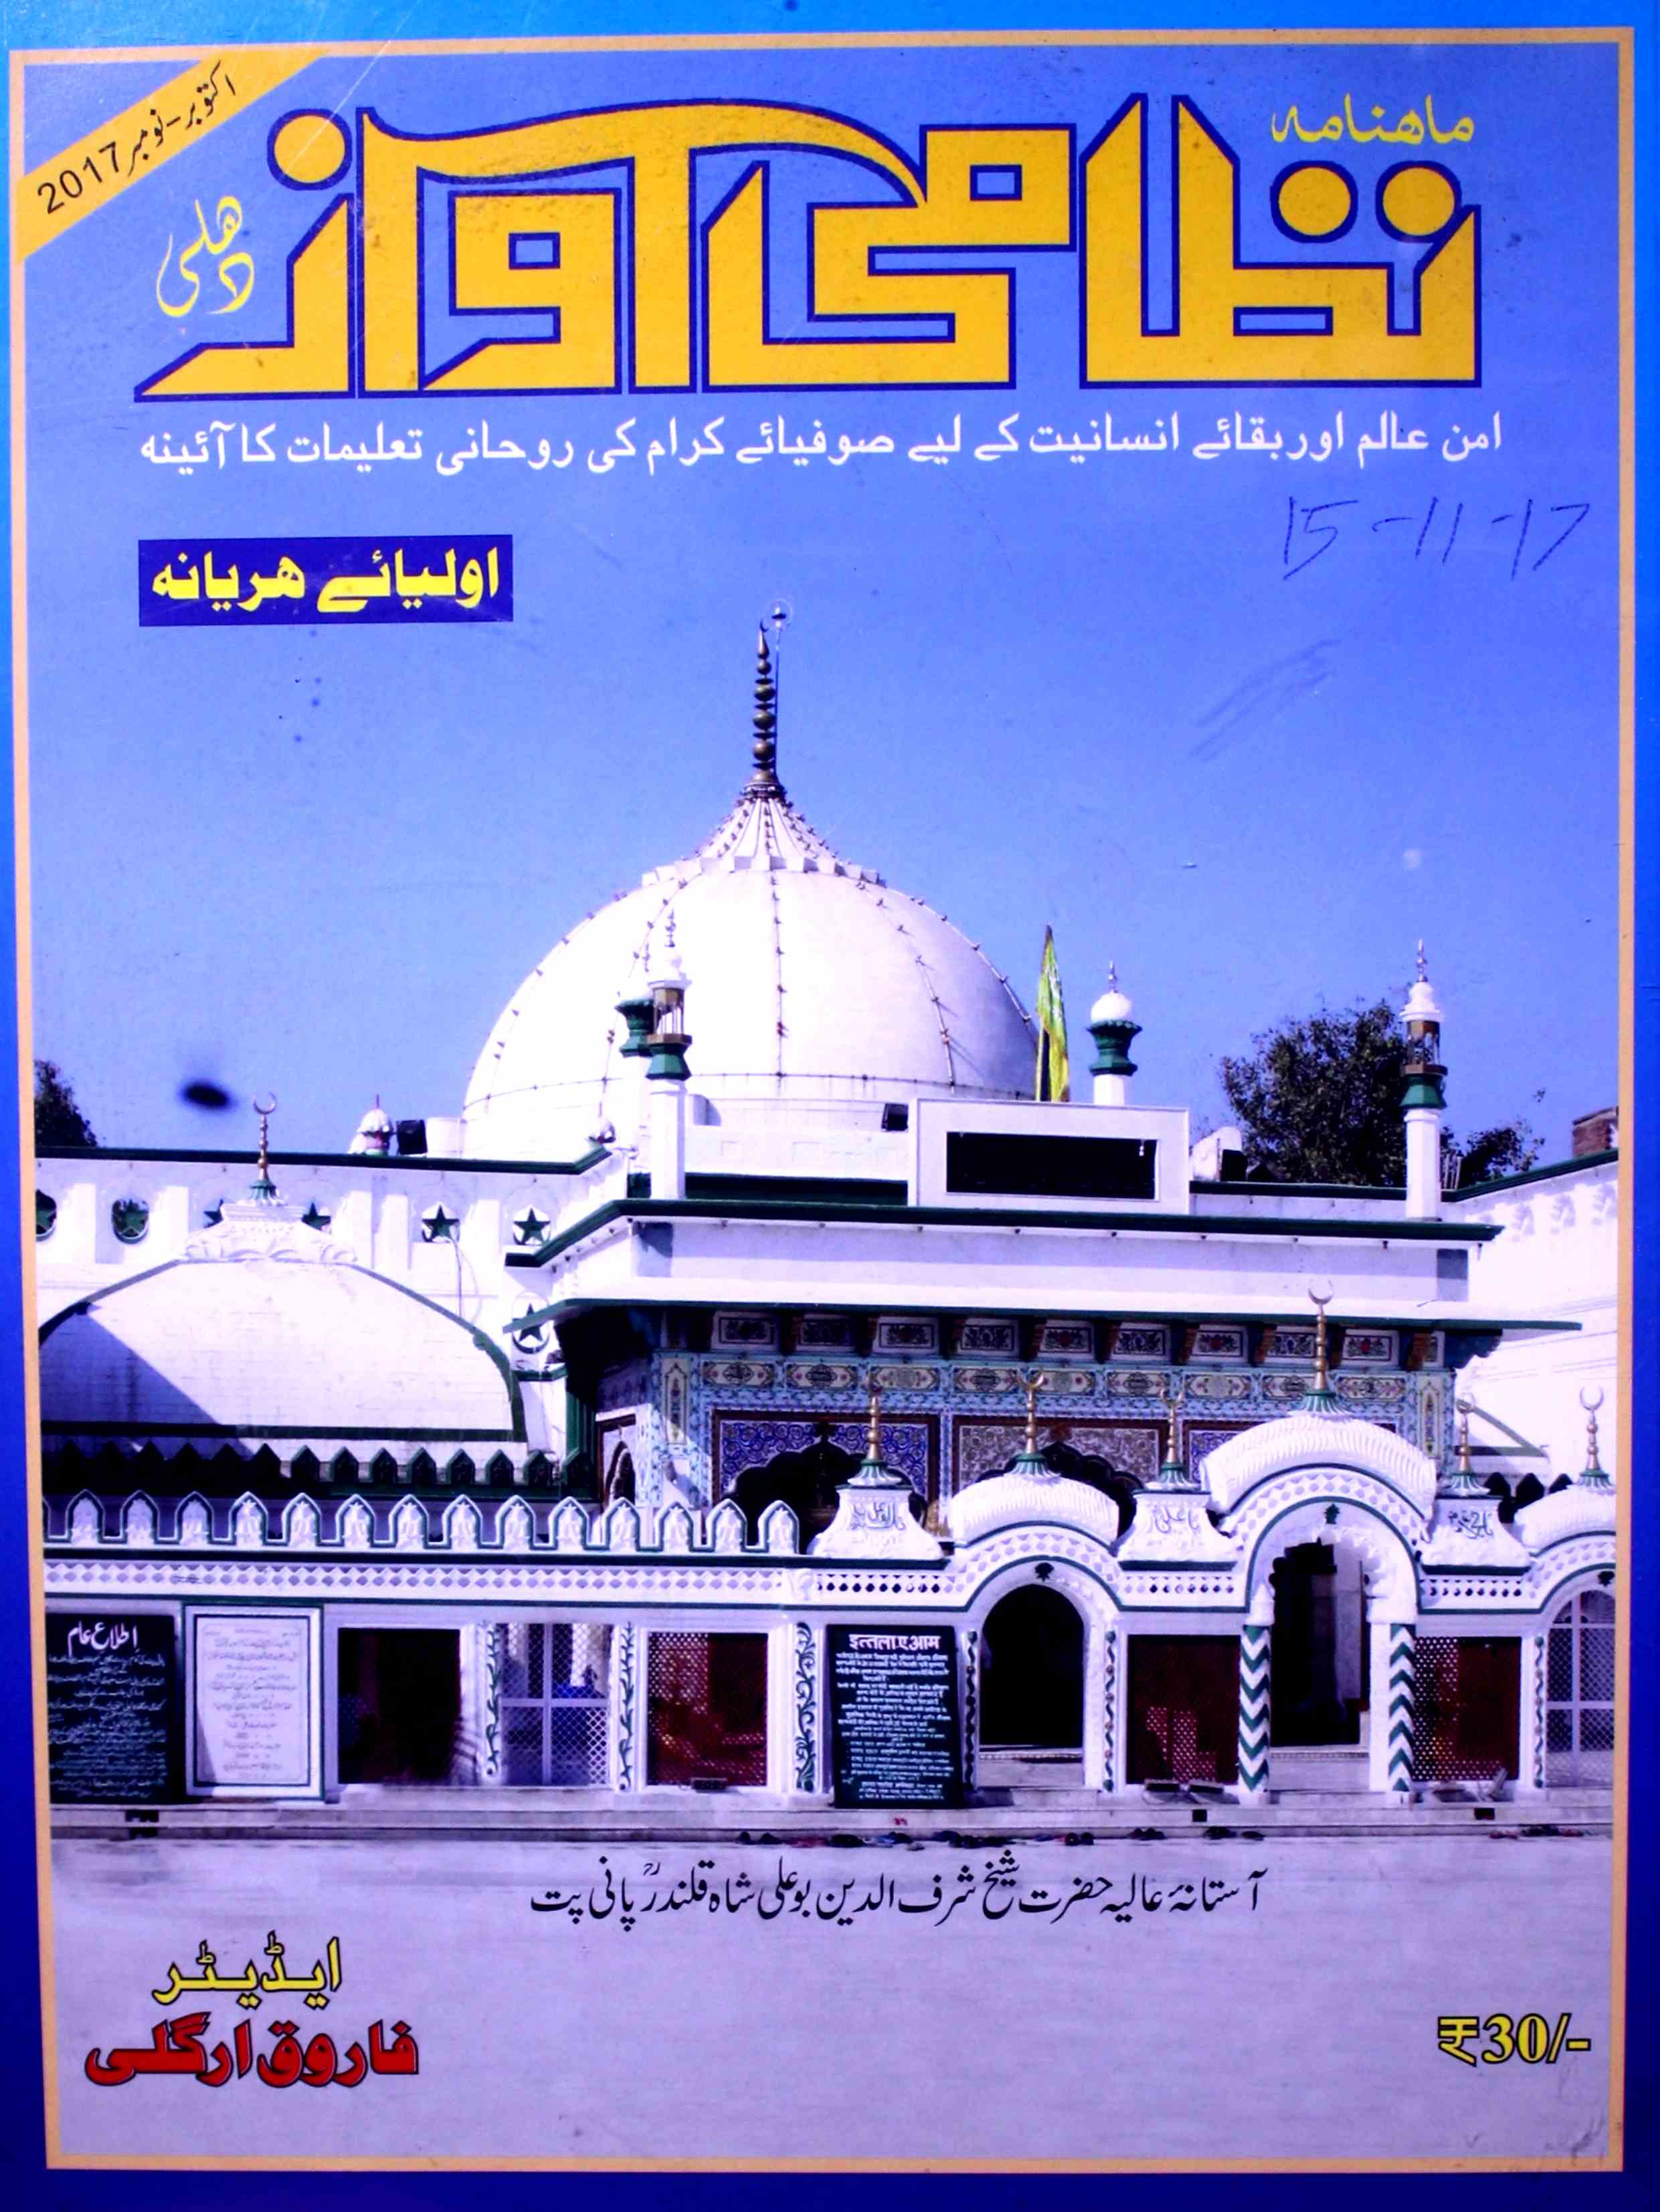 نظامی آواز- Magazine by غلام محمد 